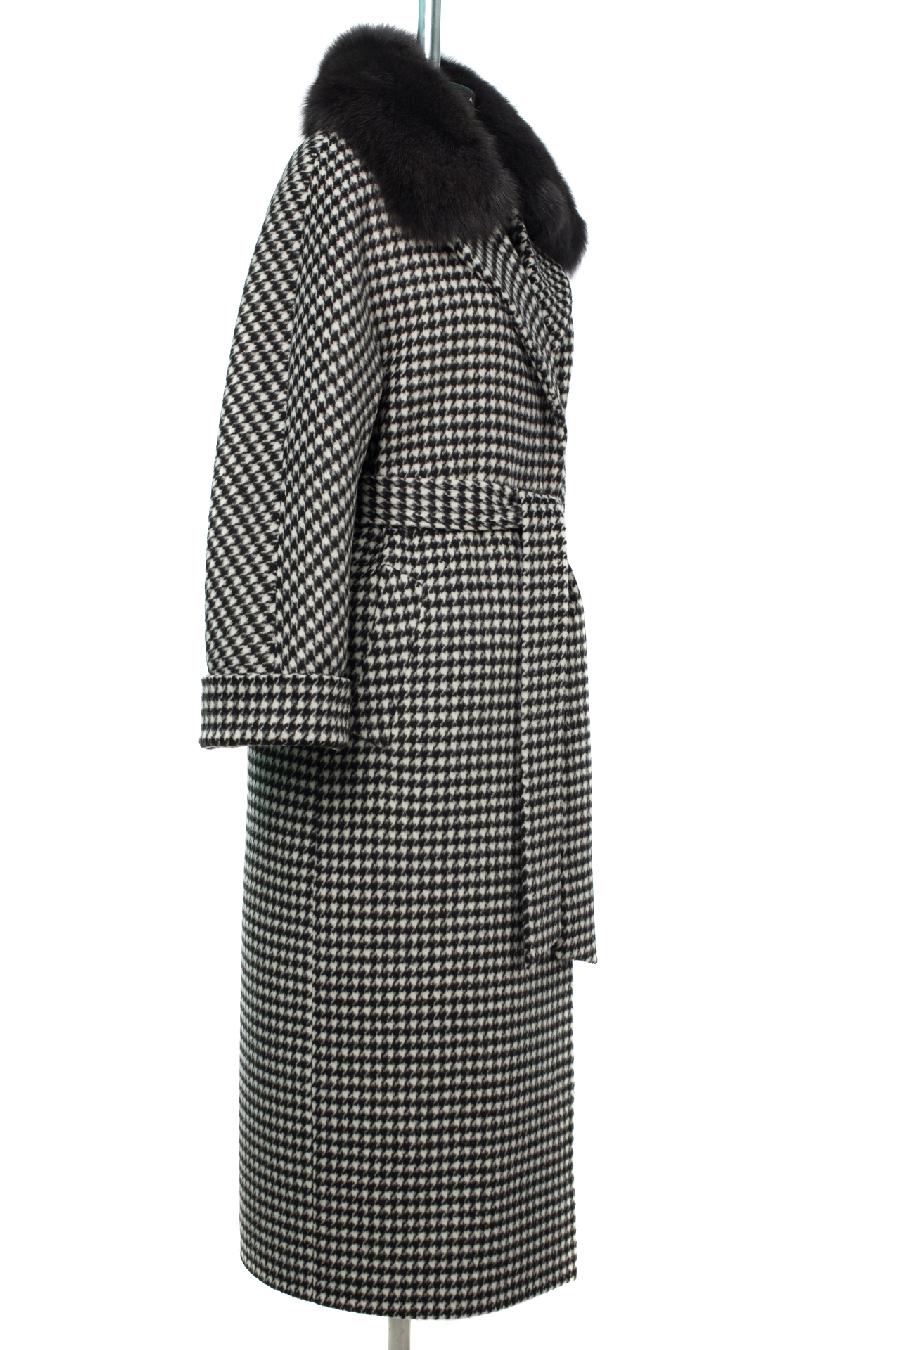 02-3091 Пальто женское утепленное (пояс) Микроворса черно-белый